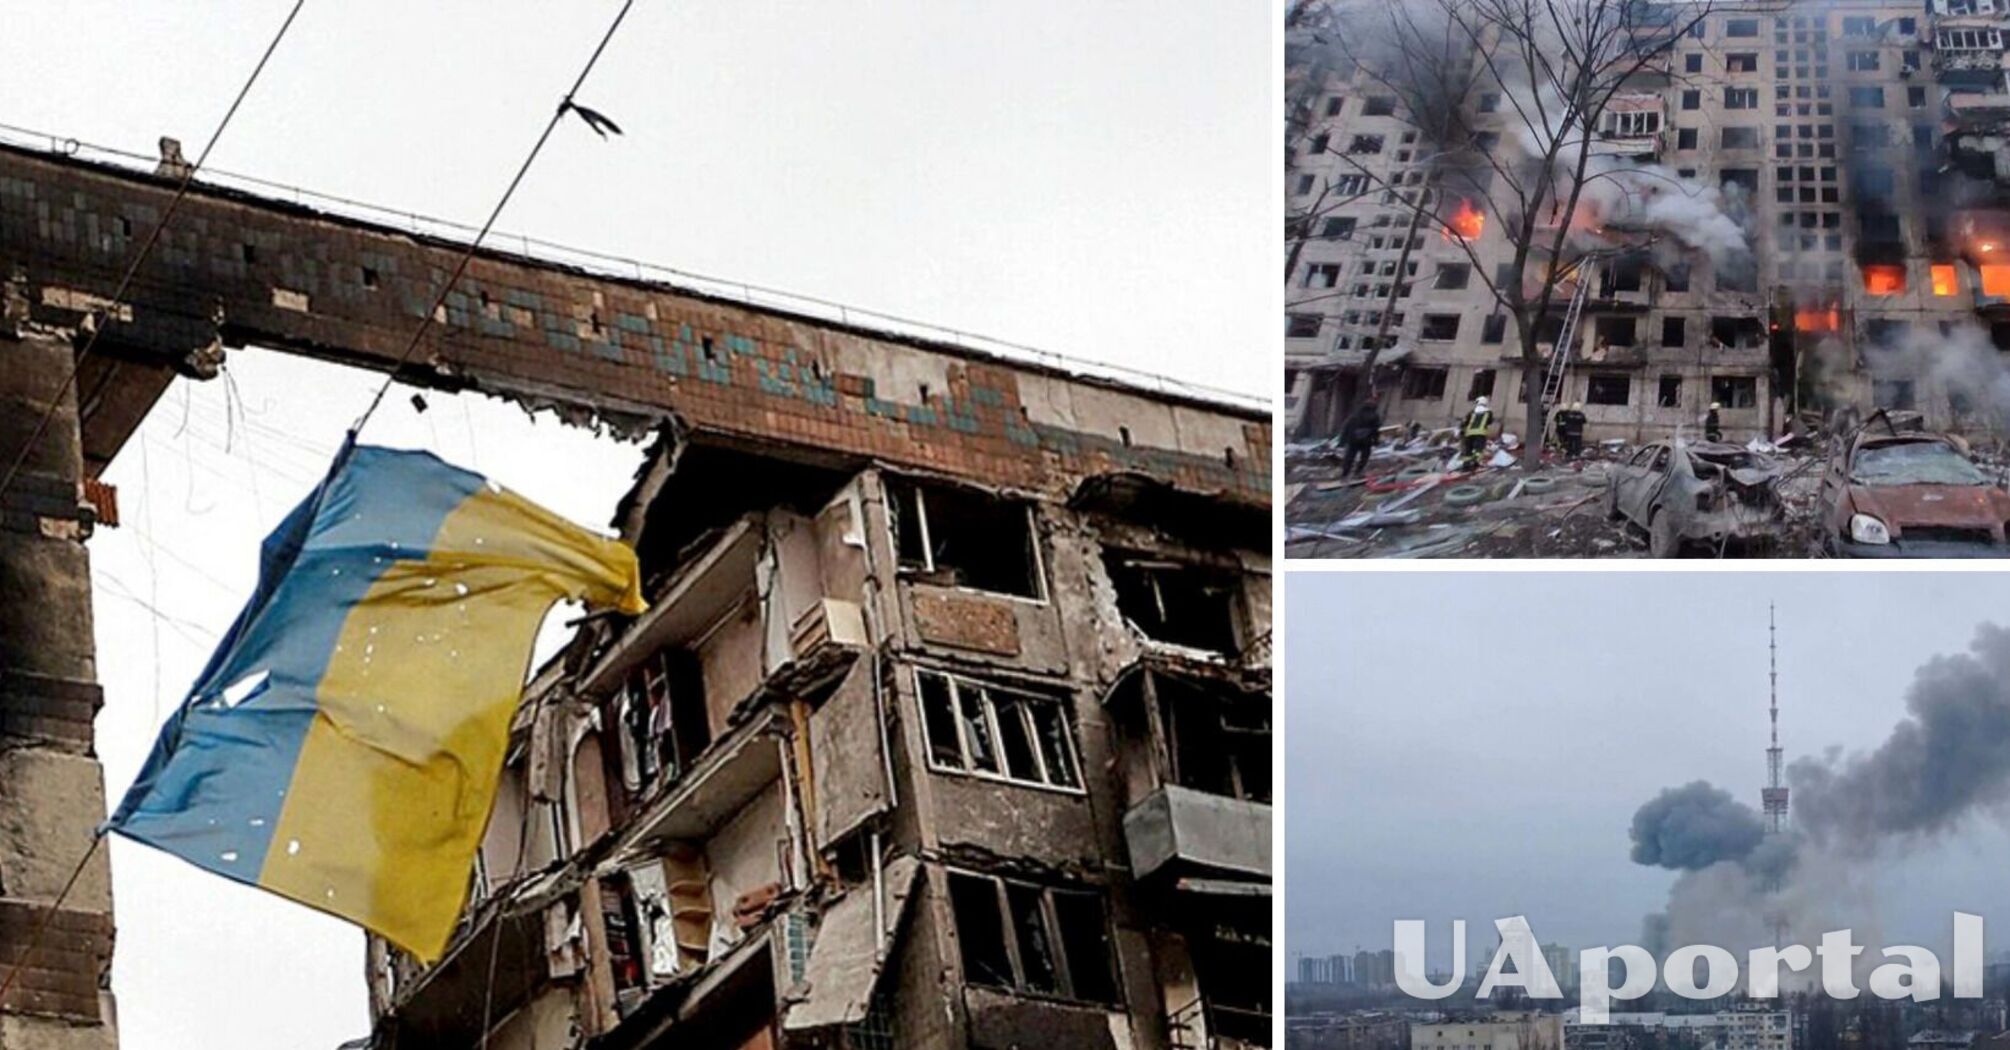 Украинцы должны уяснить логику долгого конфликта. Цель России – уничтожение Украины как государства